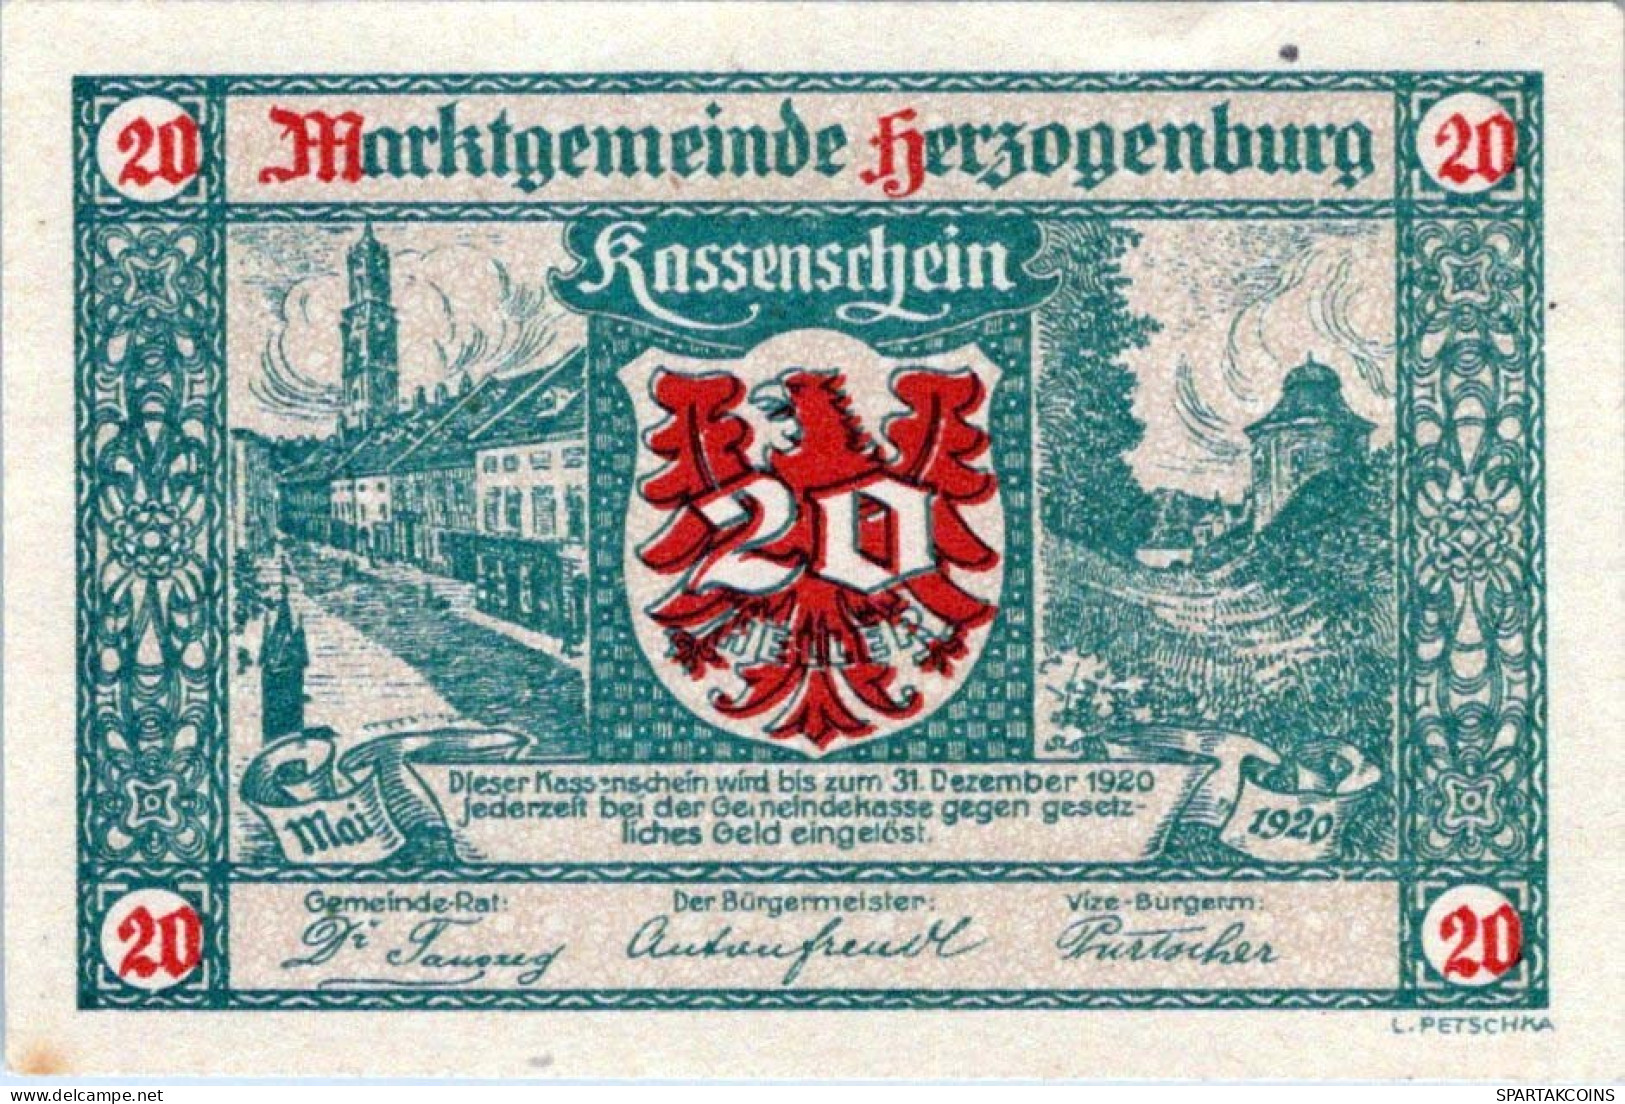 20 HELLER 1920 Stadt HERZOGENBURG Niedrigeren Österreich Notgeld #PI420 - [11] Local Banknote Issues